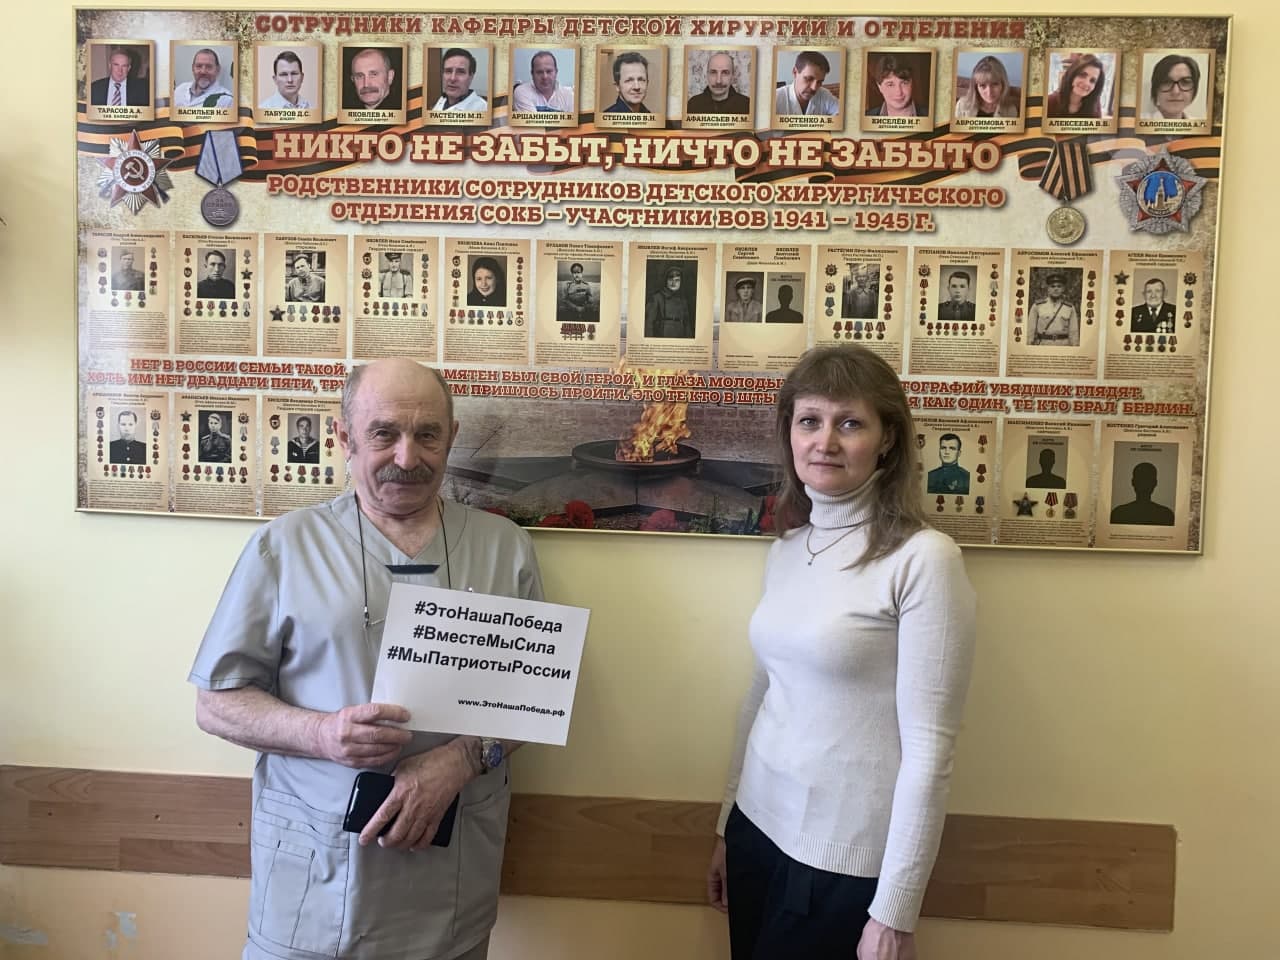 ОГБУЗ Смоленская областная клиническая больница участвует в международной акции #ЭтоНашаПобеда